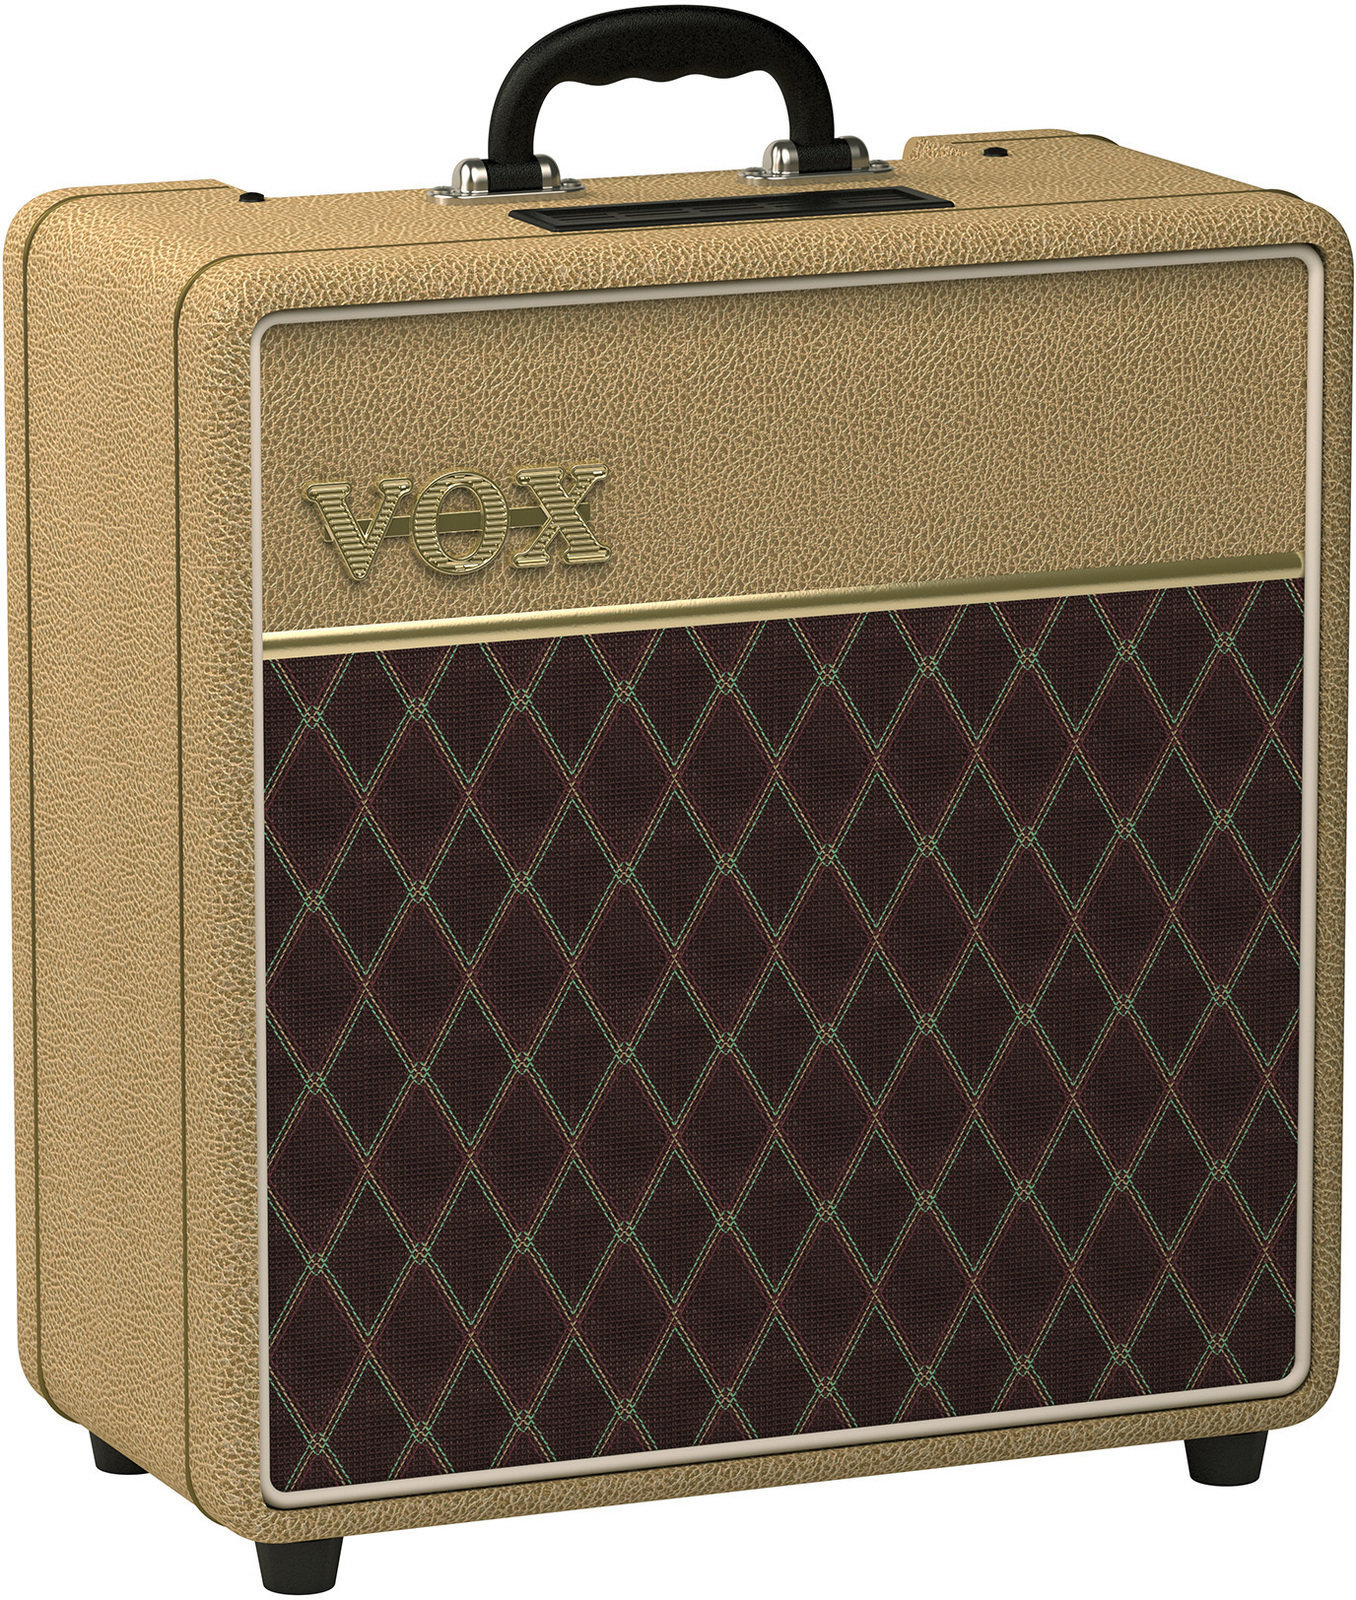 Lampové gitarové kombo Vox AC4C1-12-TN